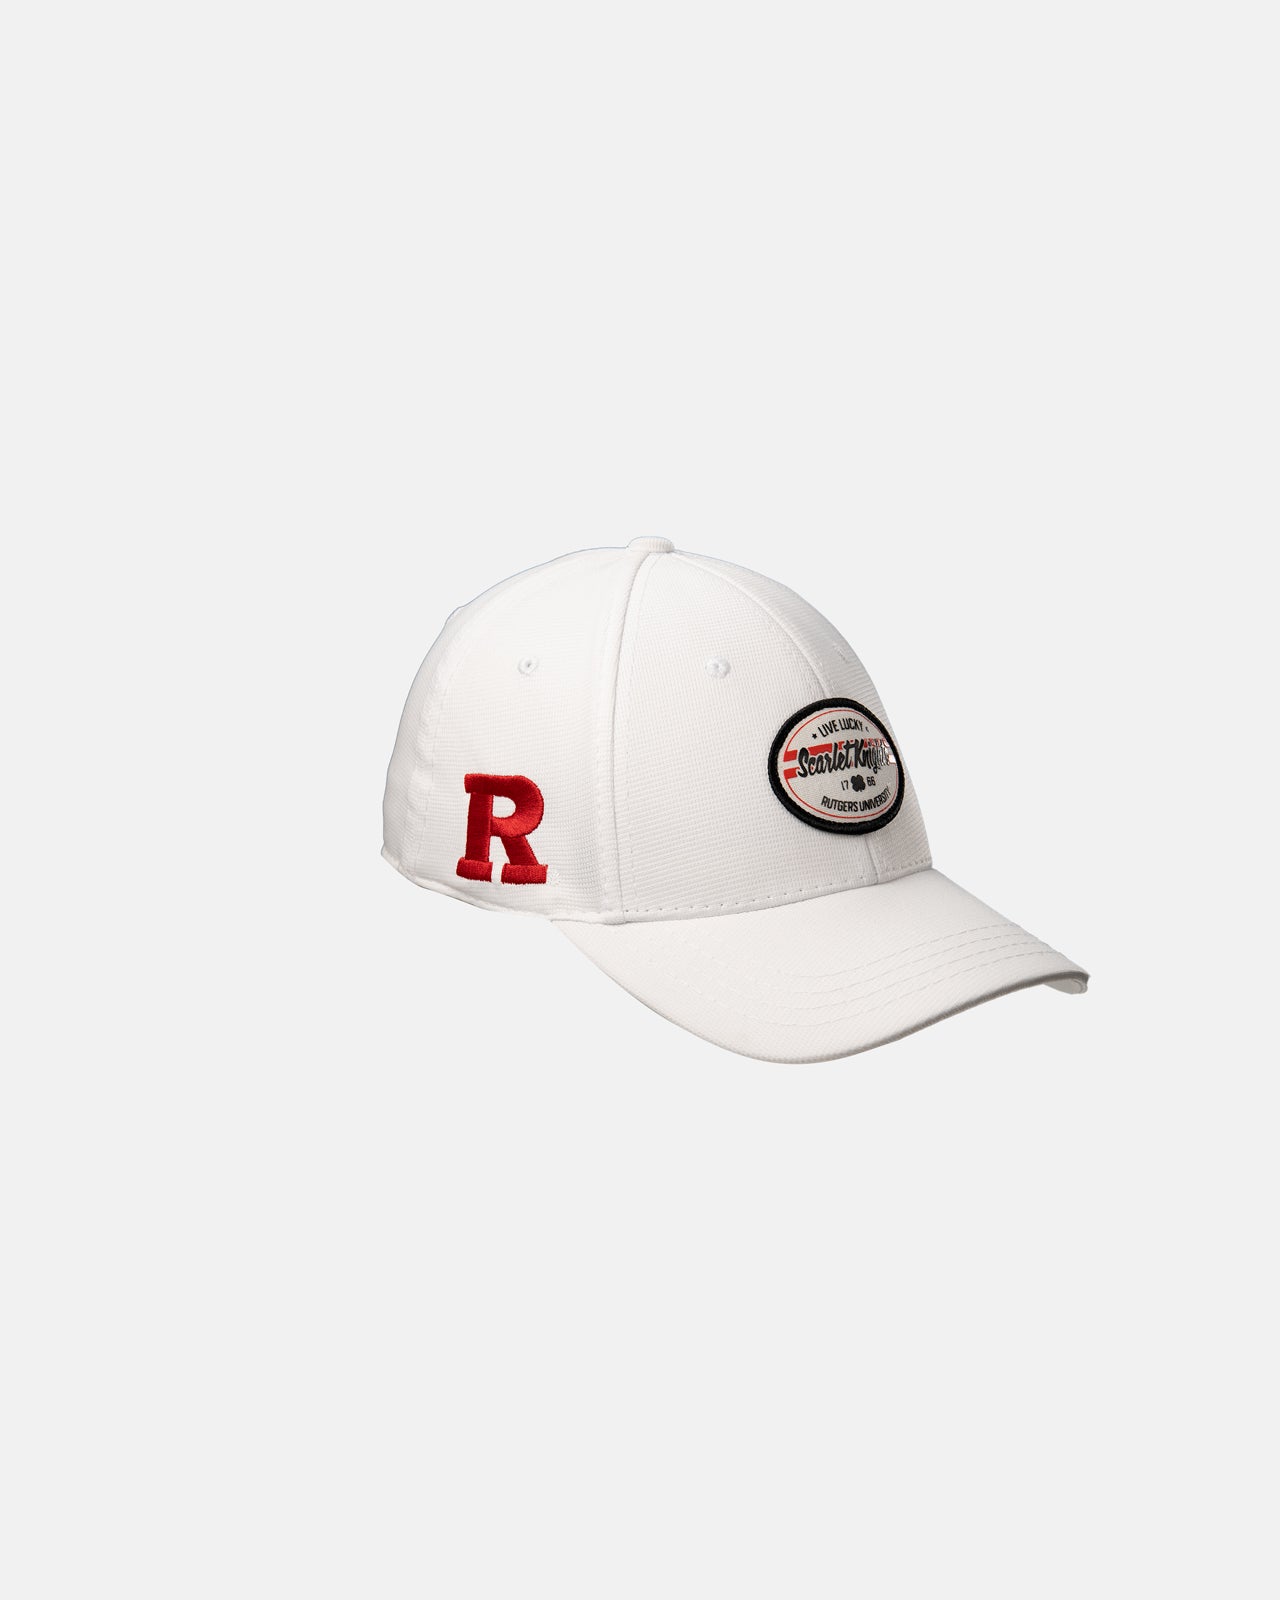 Rutgers Force